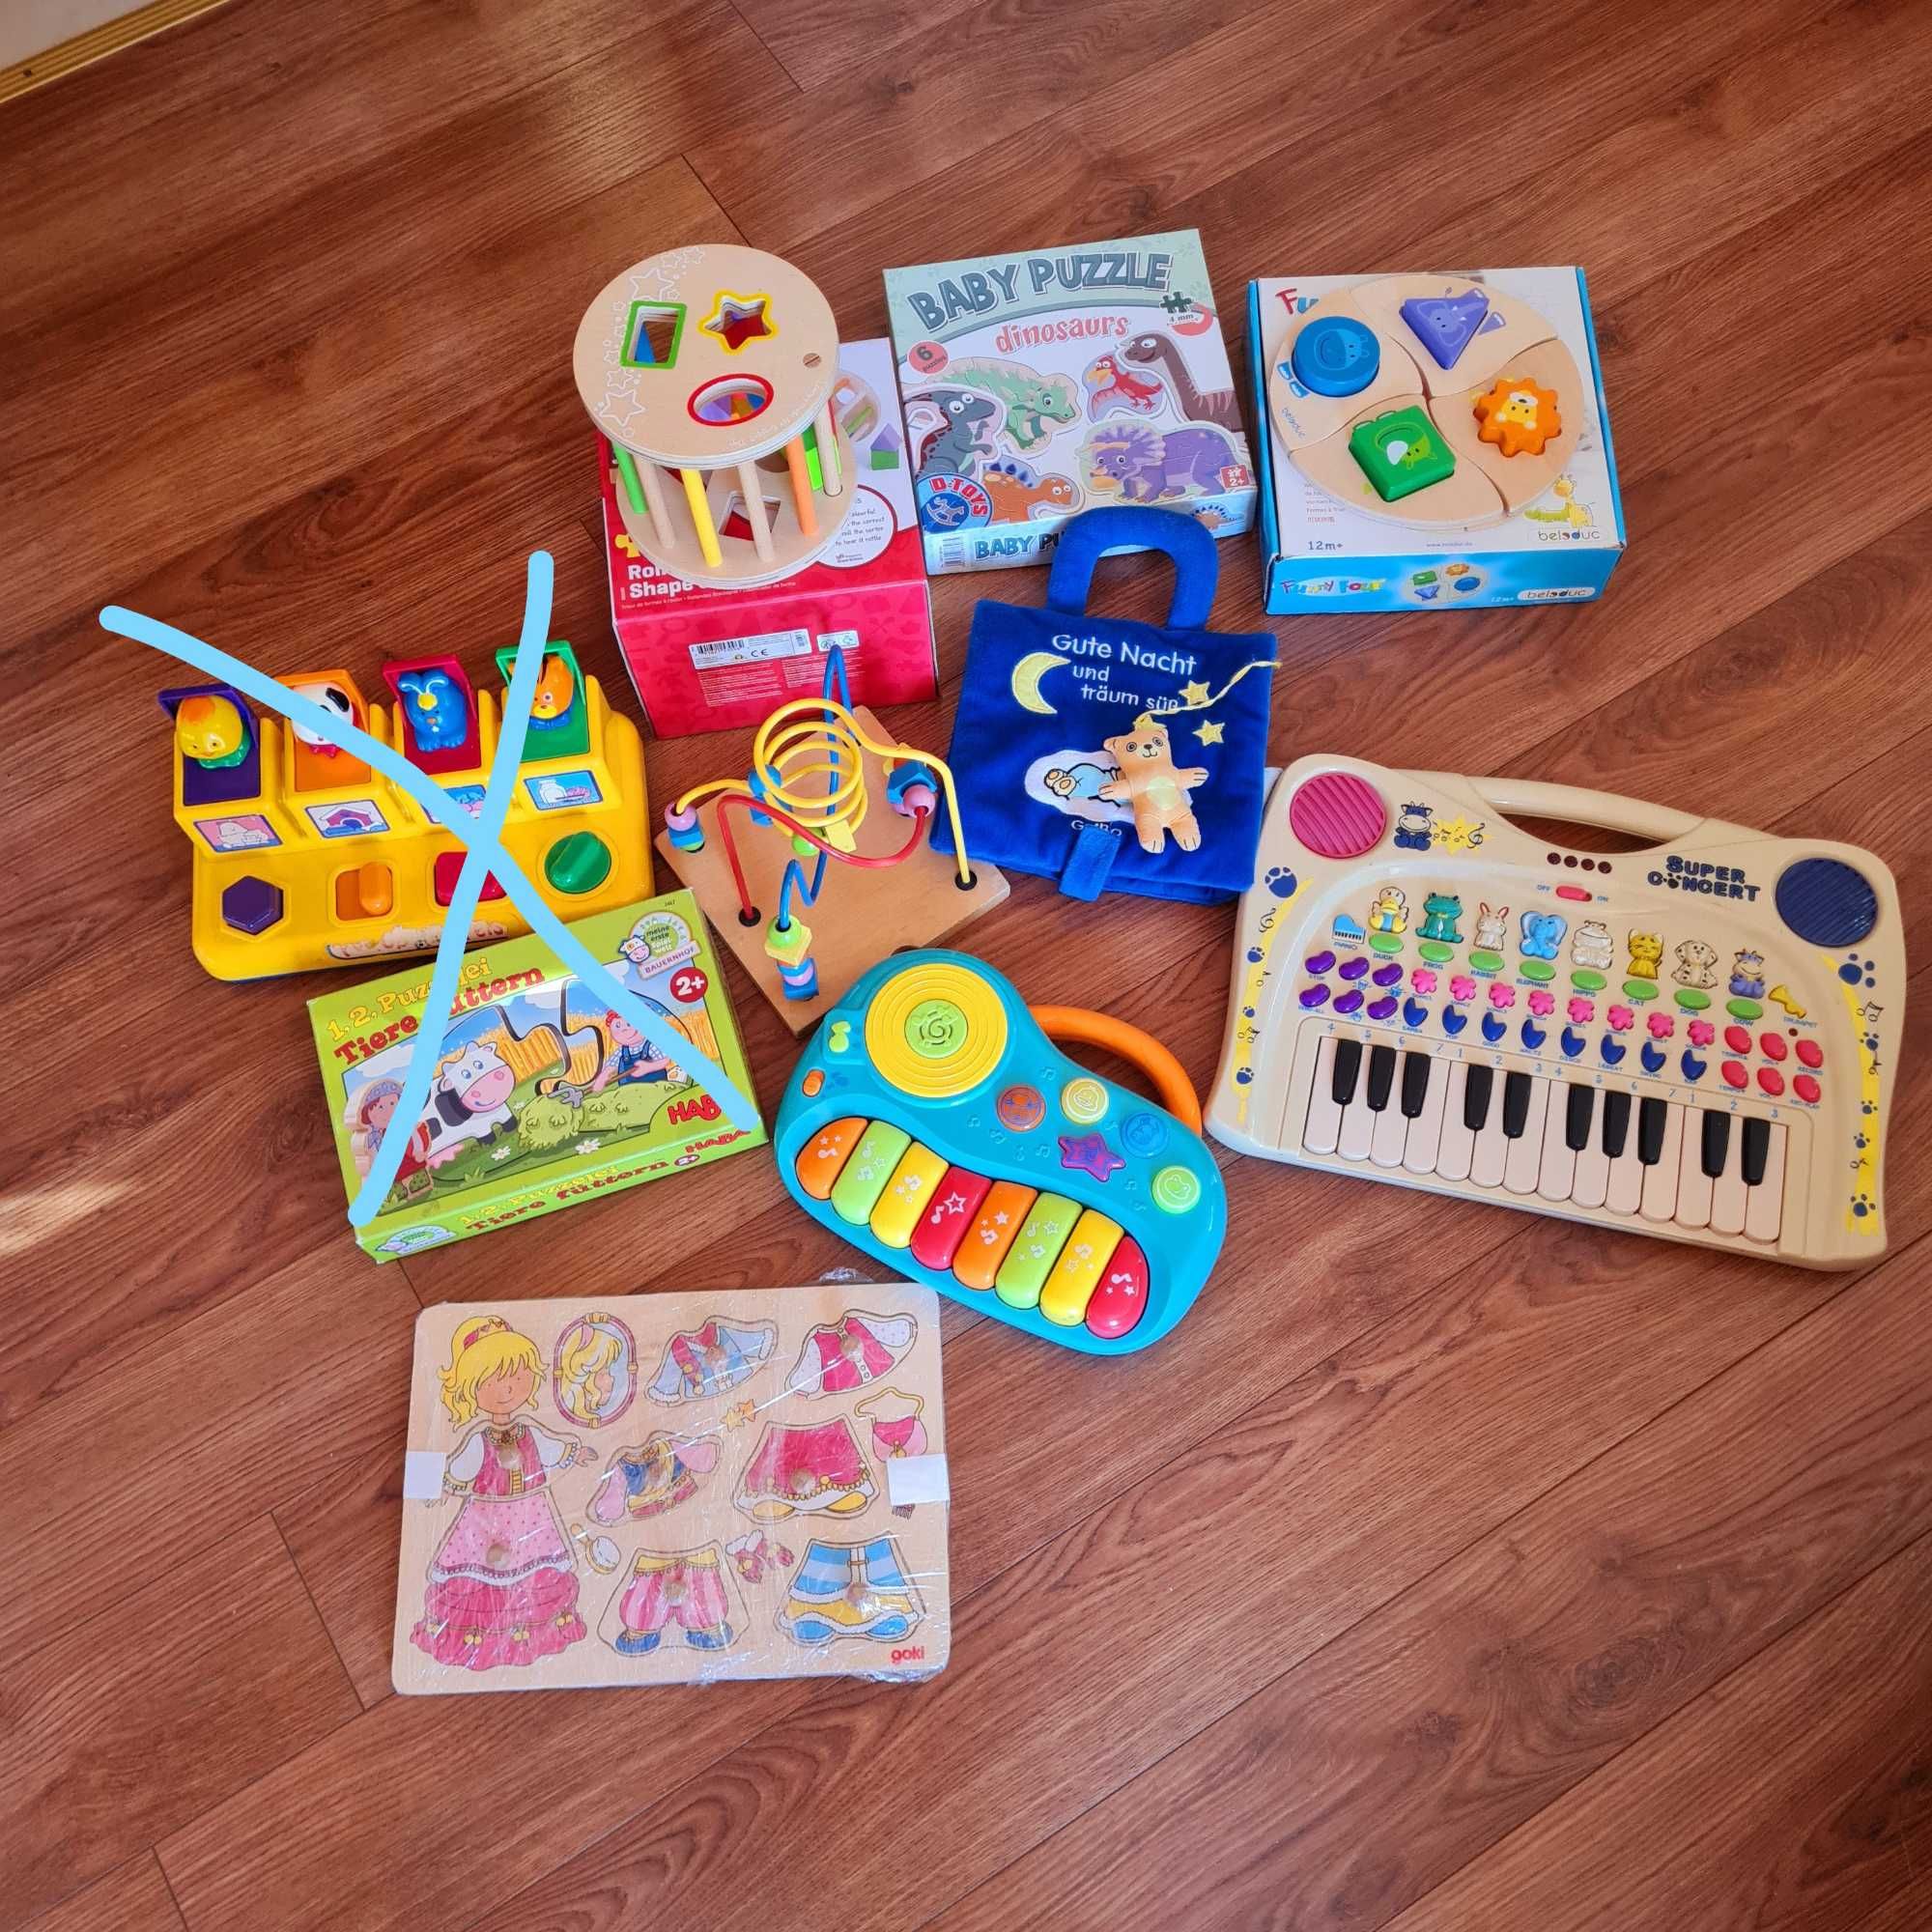 Lot jucarii pentru copii mici 1-2 ani gen Montessori aproape noi